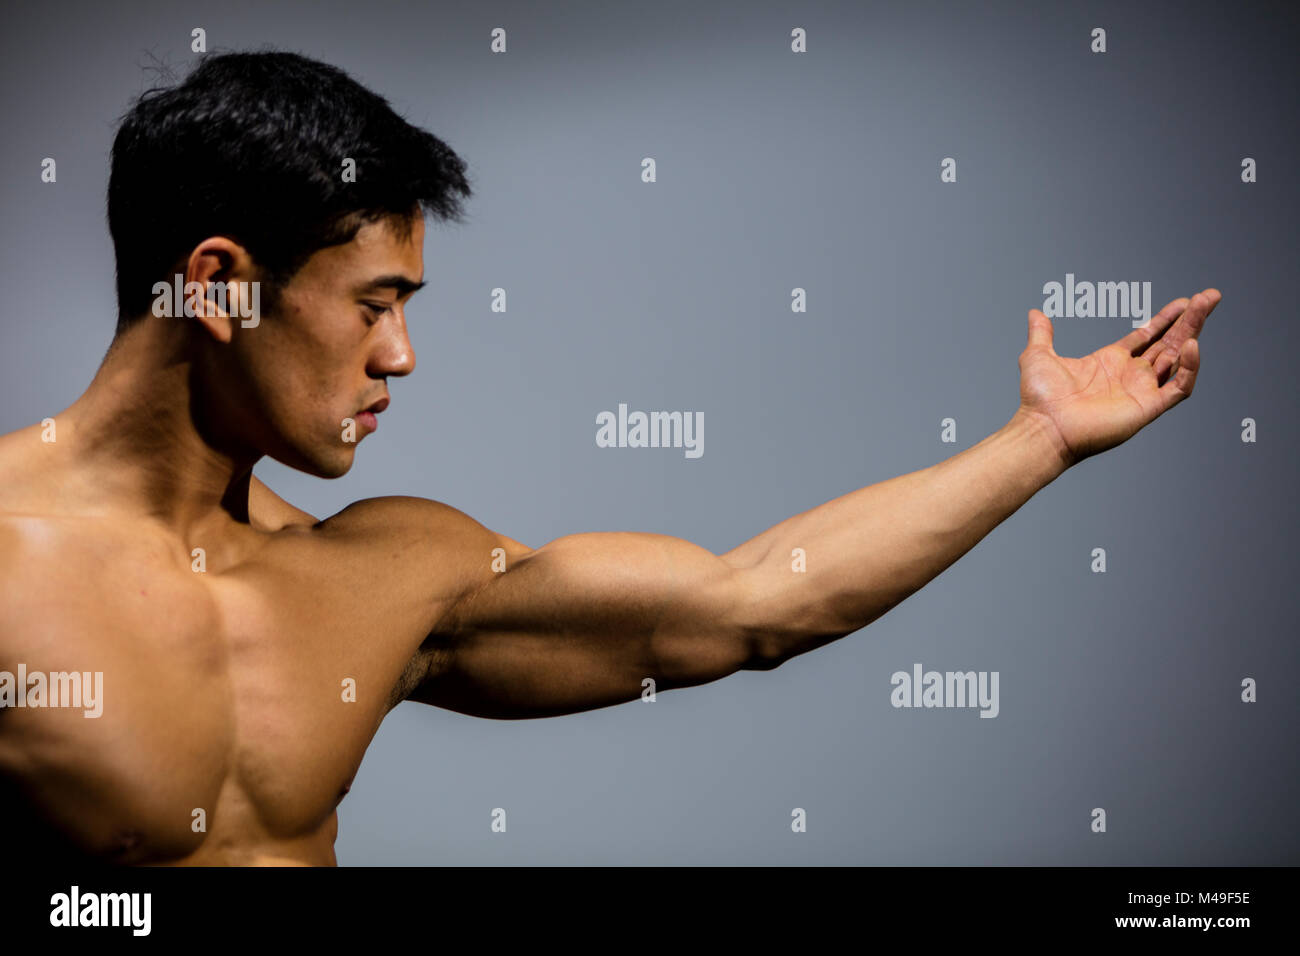 Un modelo de fitness con un brazo estirado mostrando su músculo bíceps.  Perfil Fotografía de stock - Alamy